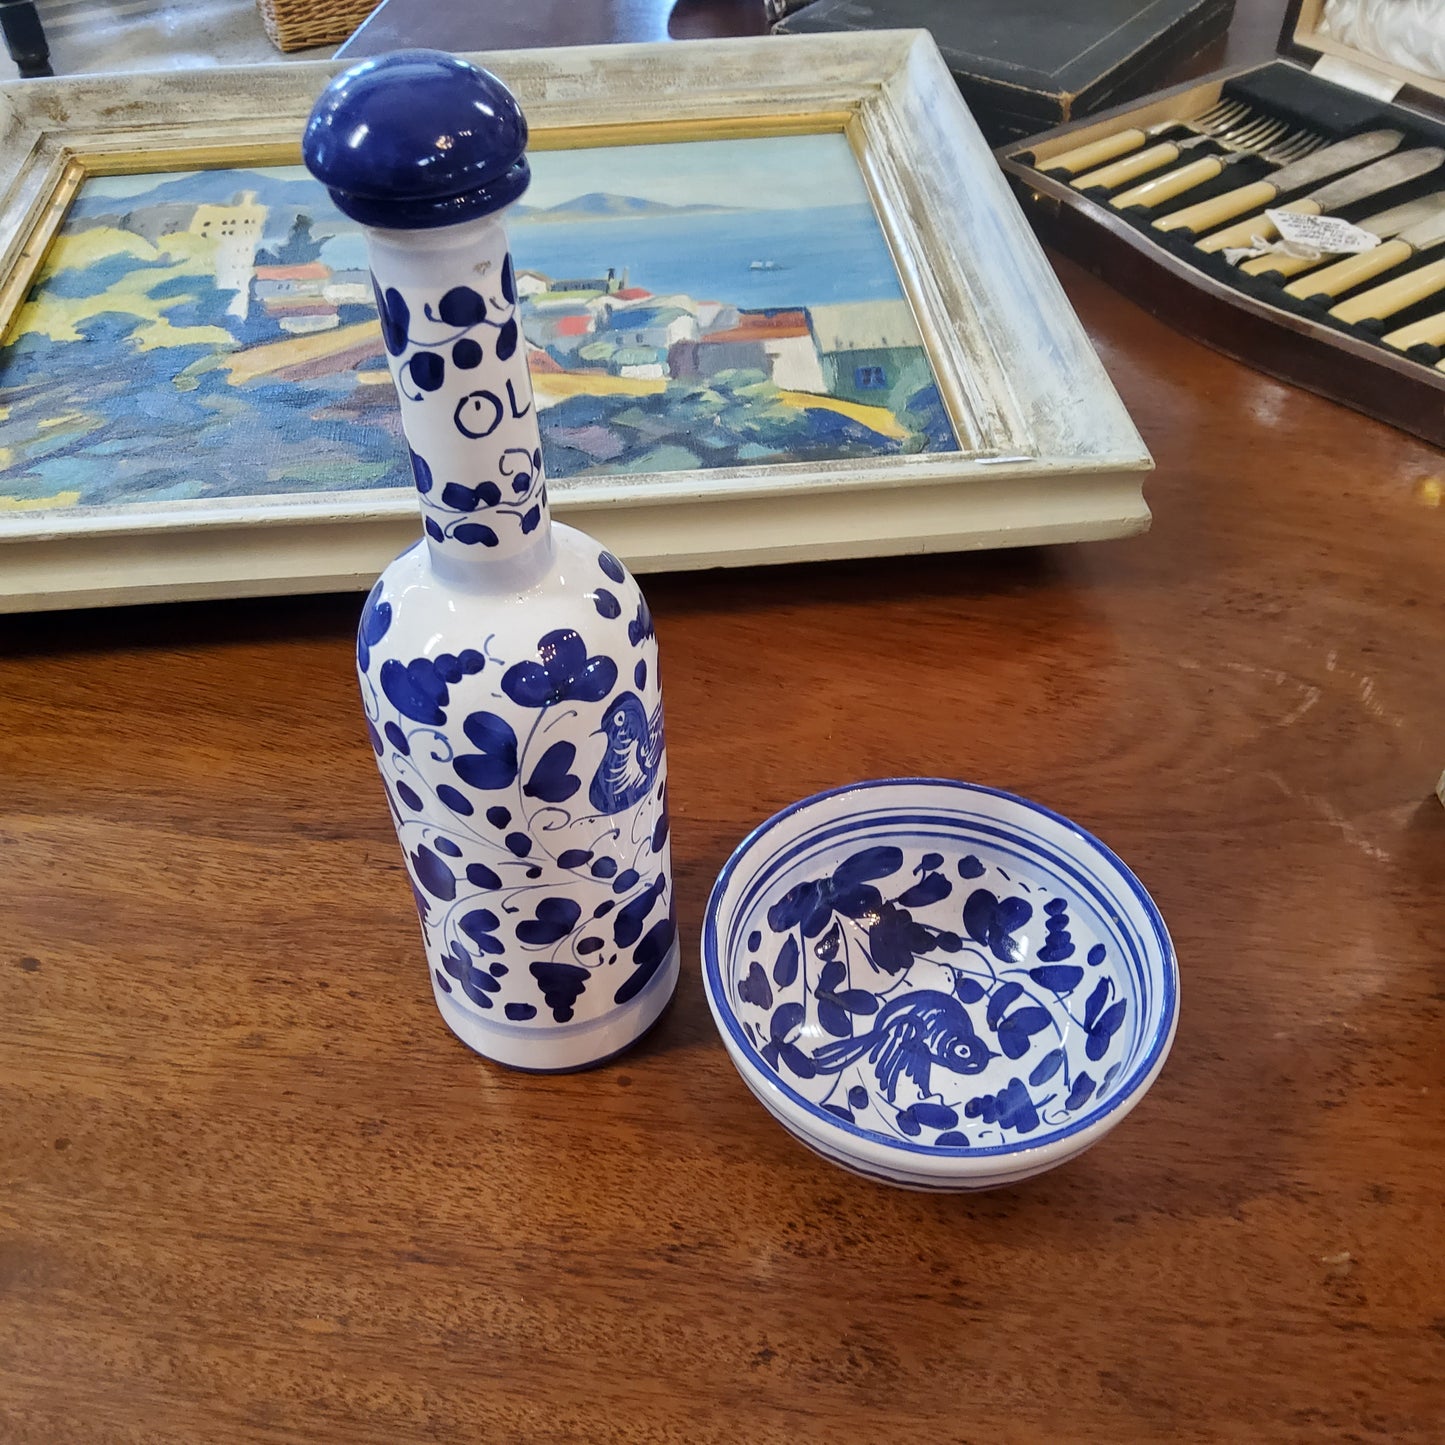 Ceramic Oil carafe and bowl